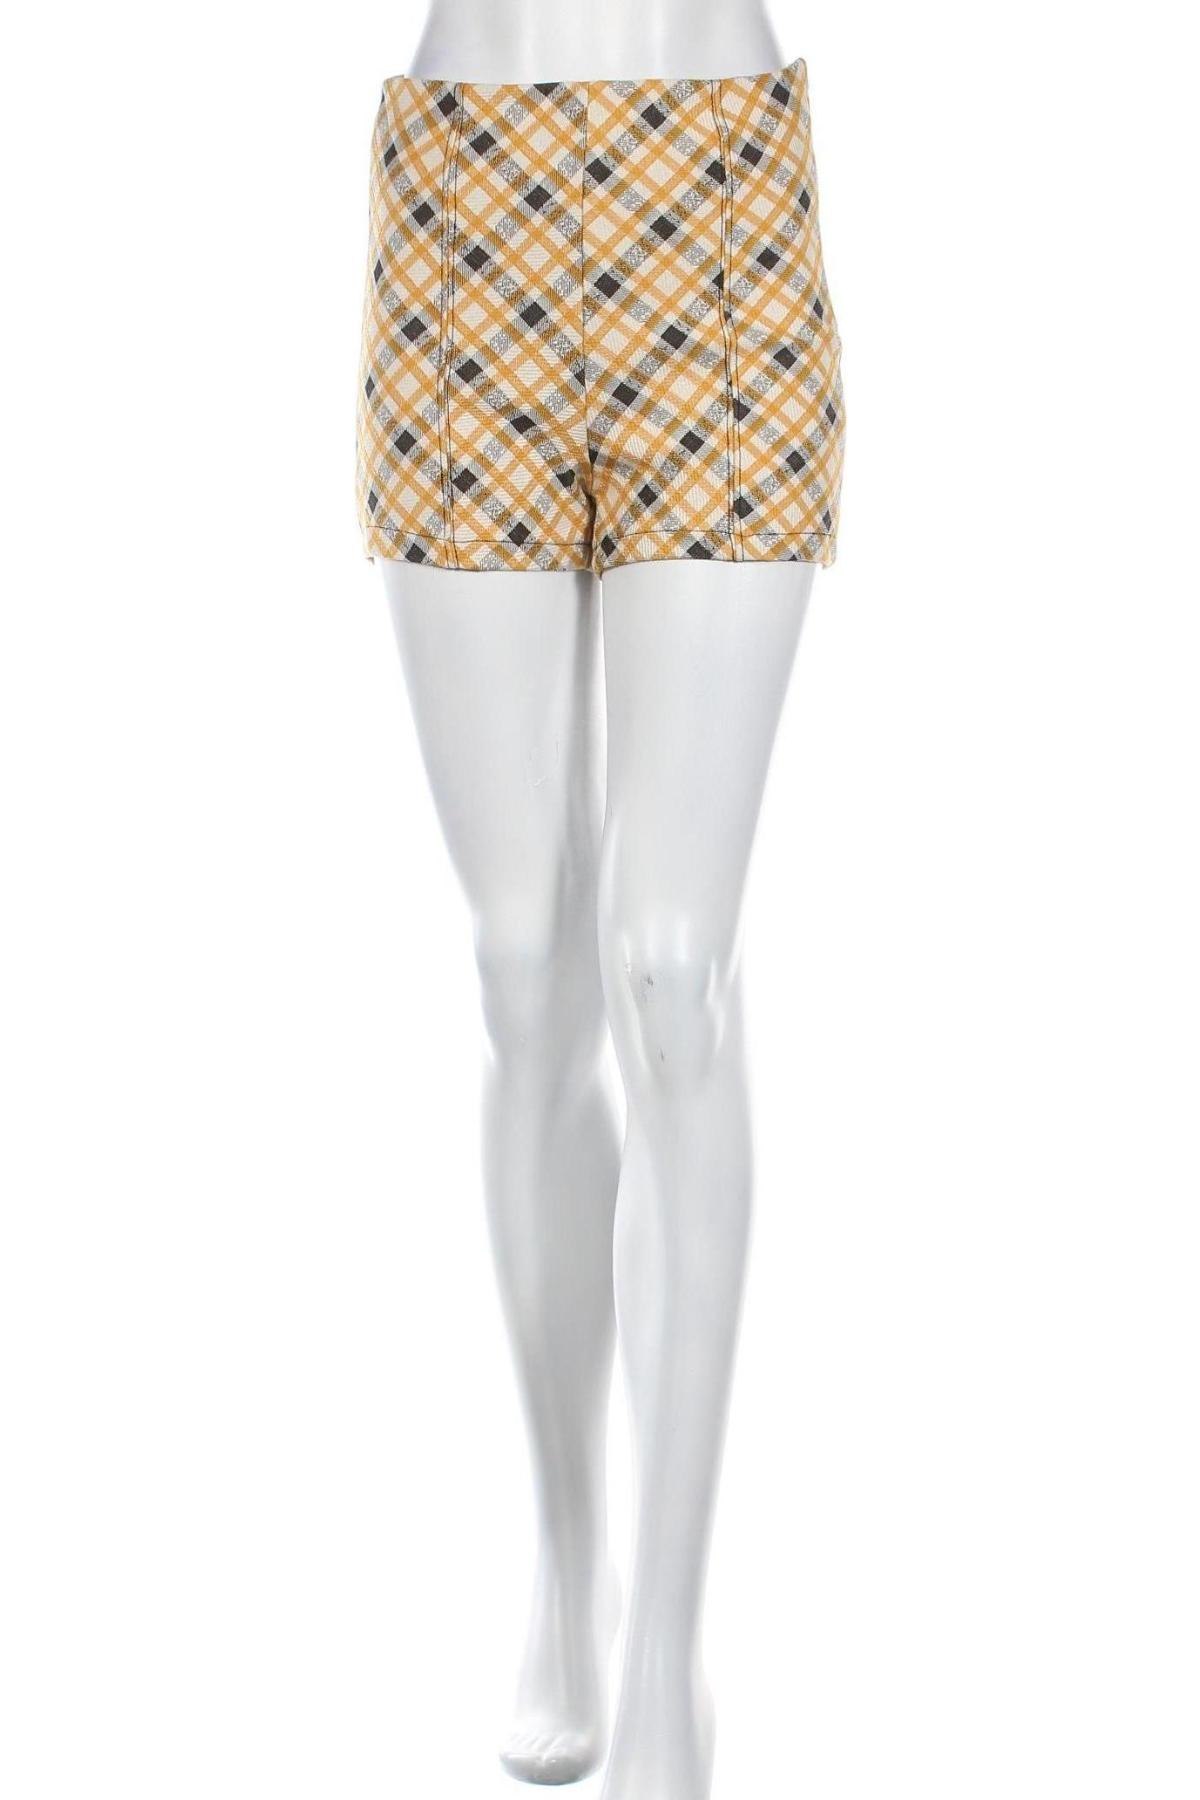 Γυναικείο κοντό παντελόνι Bershka, Μέγεθος M, Χρώμα Πολύχρωμο, 62% πολυεστέρας, 27% βαμβάκι, 9% βισκόζη, 2% ελαστάνη, Τιμή 20,10 €